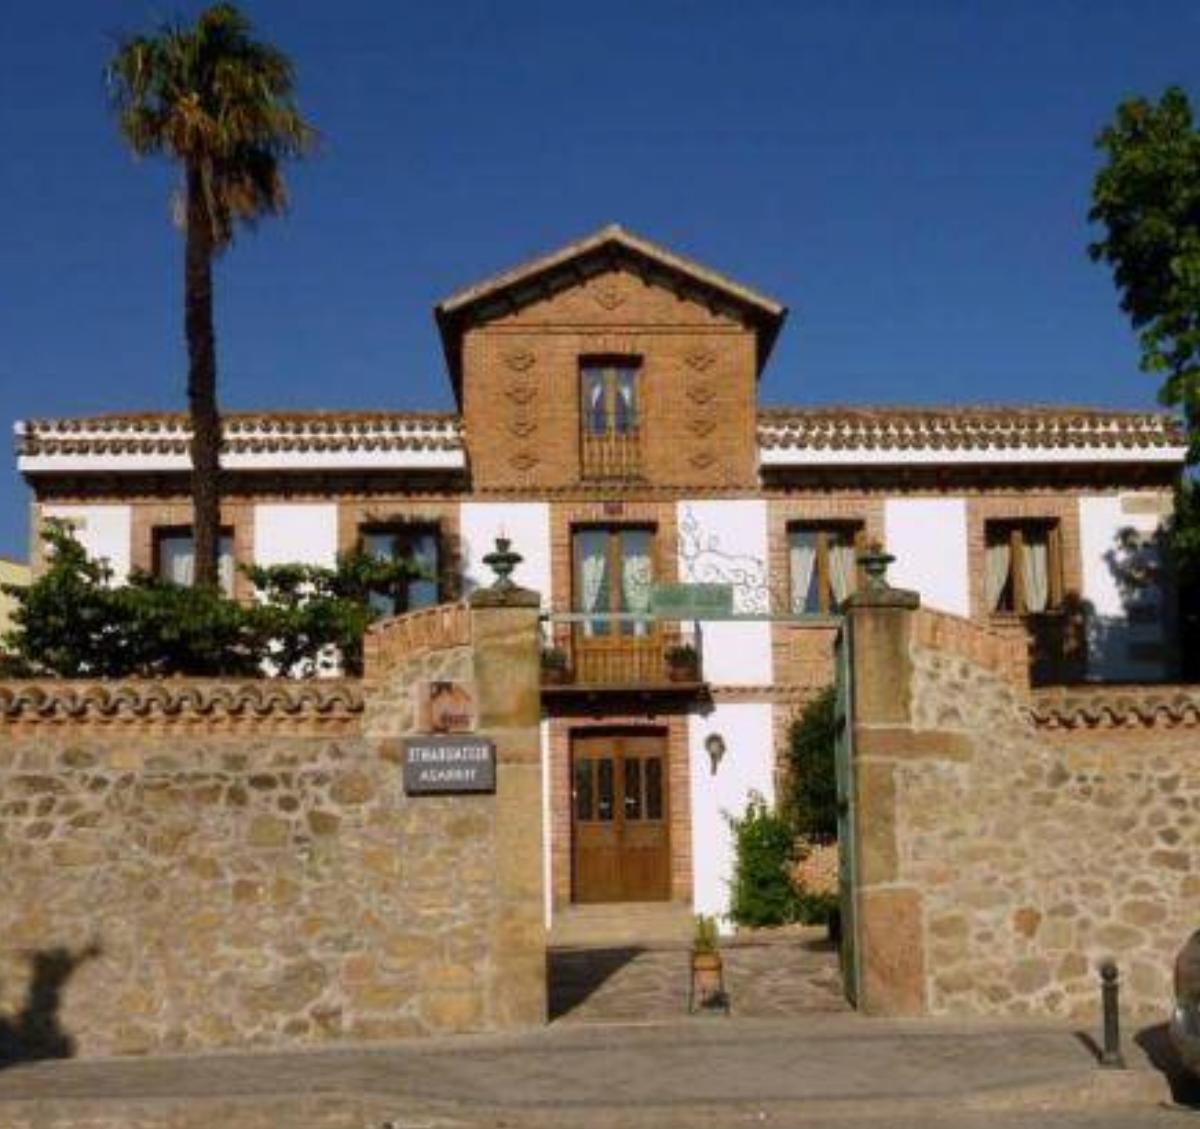 Posada Villa Maria Hotel La Adrada Spain